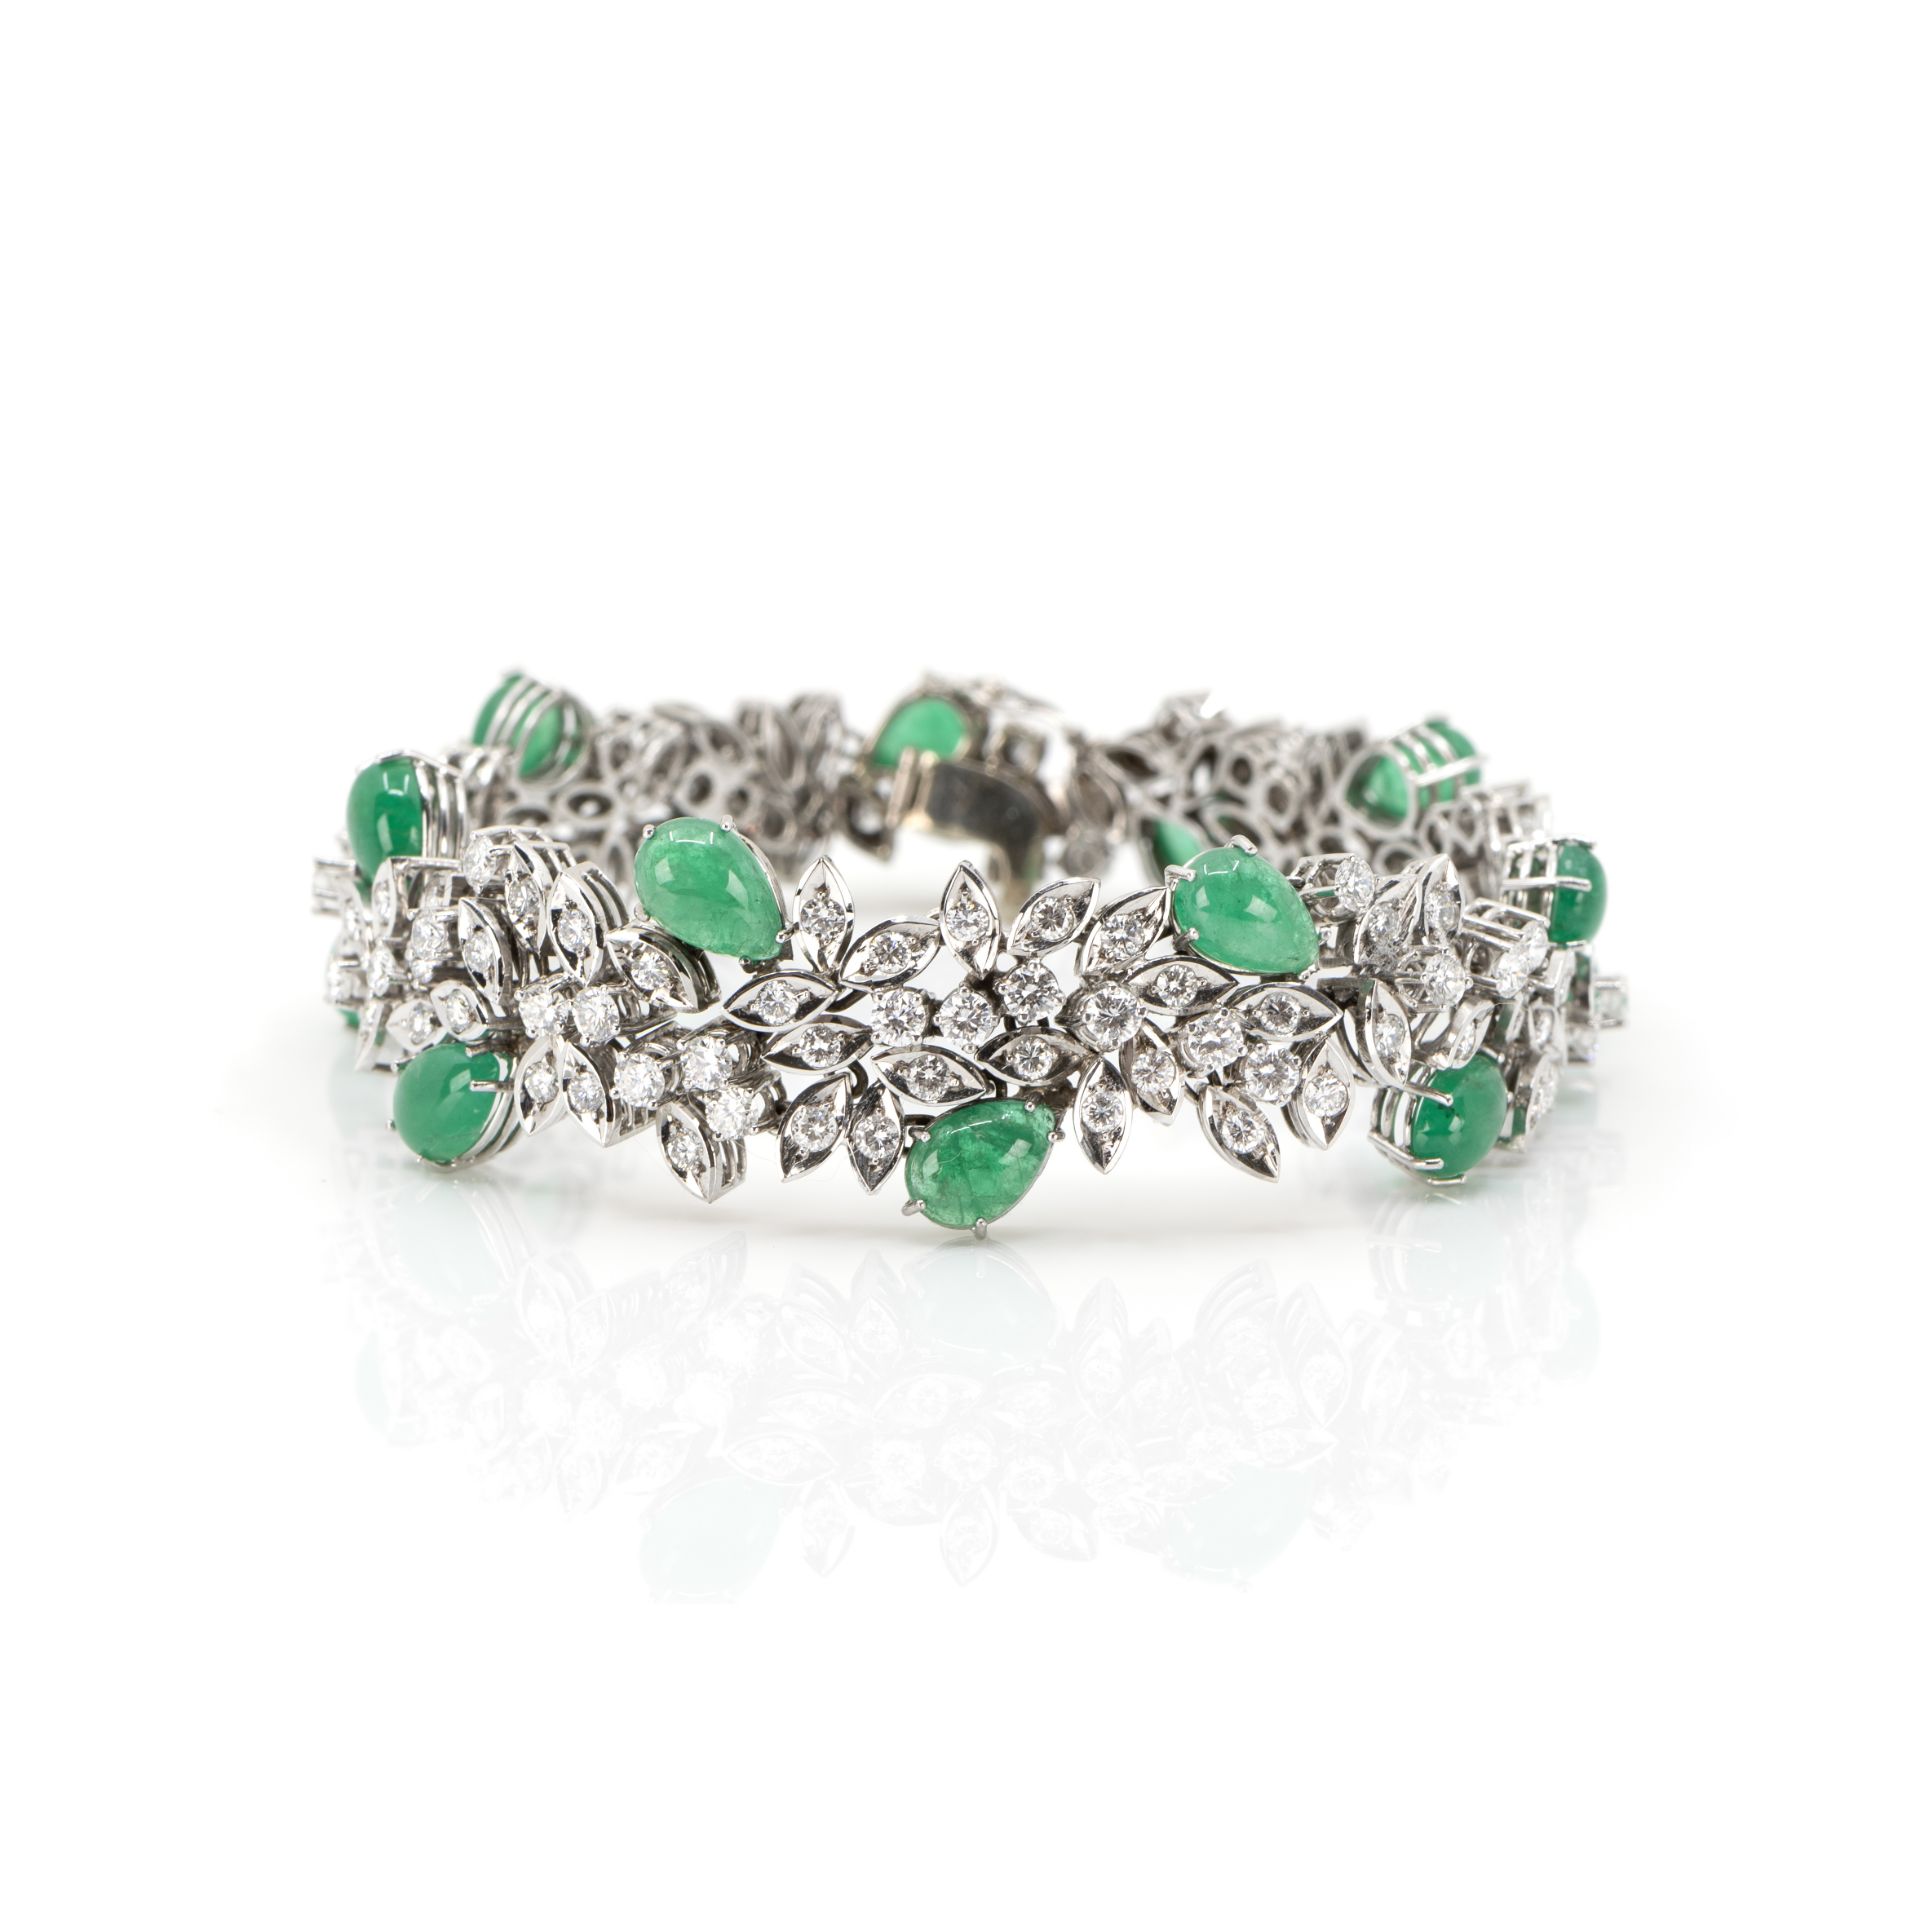 Collier und Armband mit Smaragd-Diamantbesatz - Bild 6 aus 8